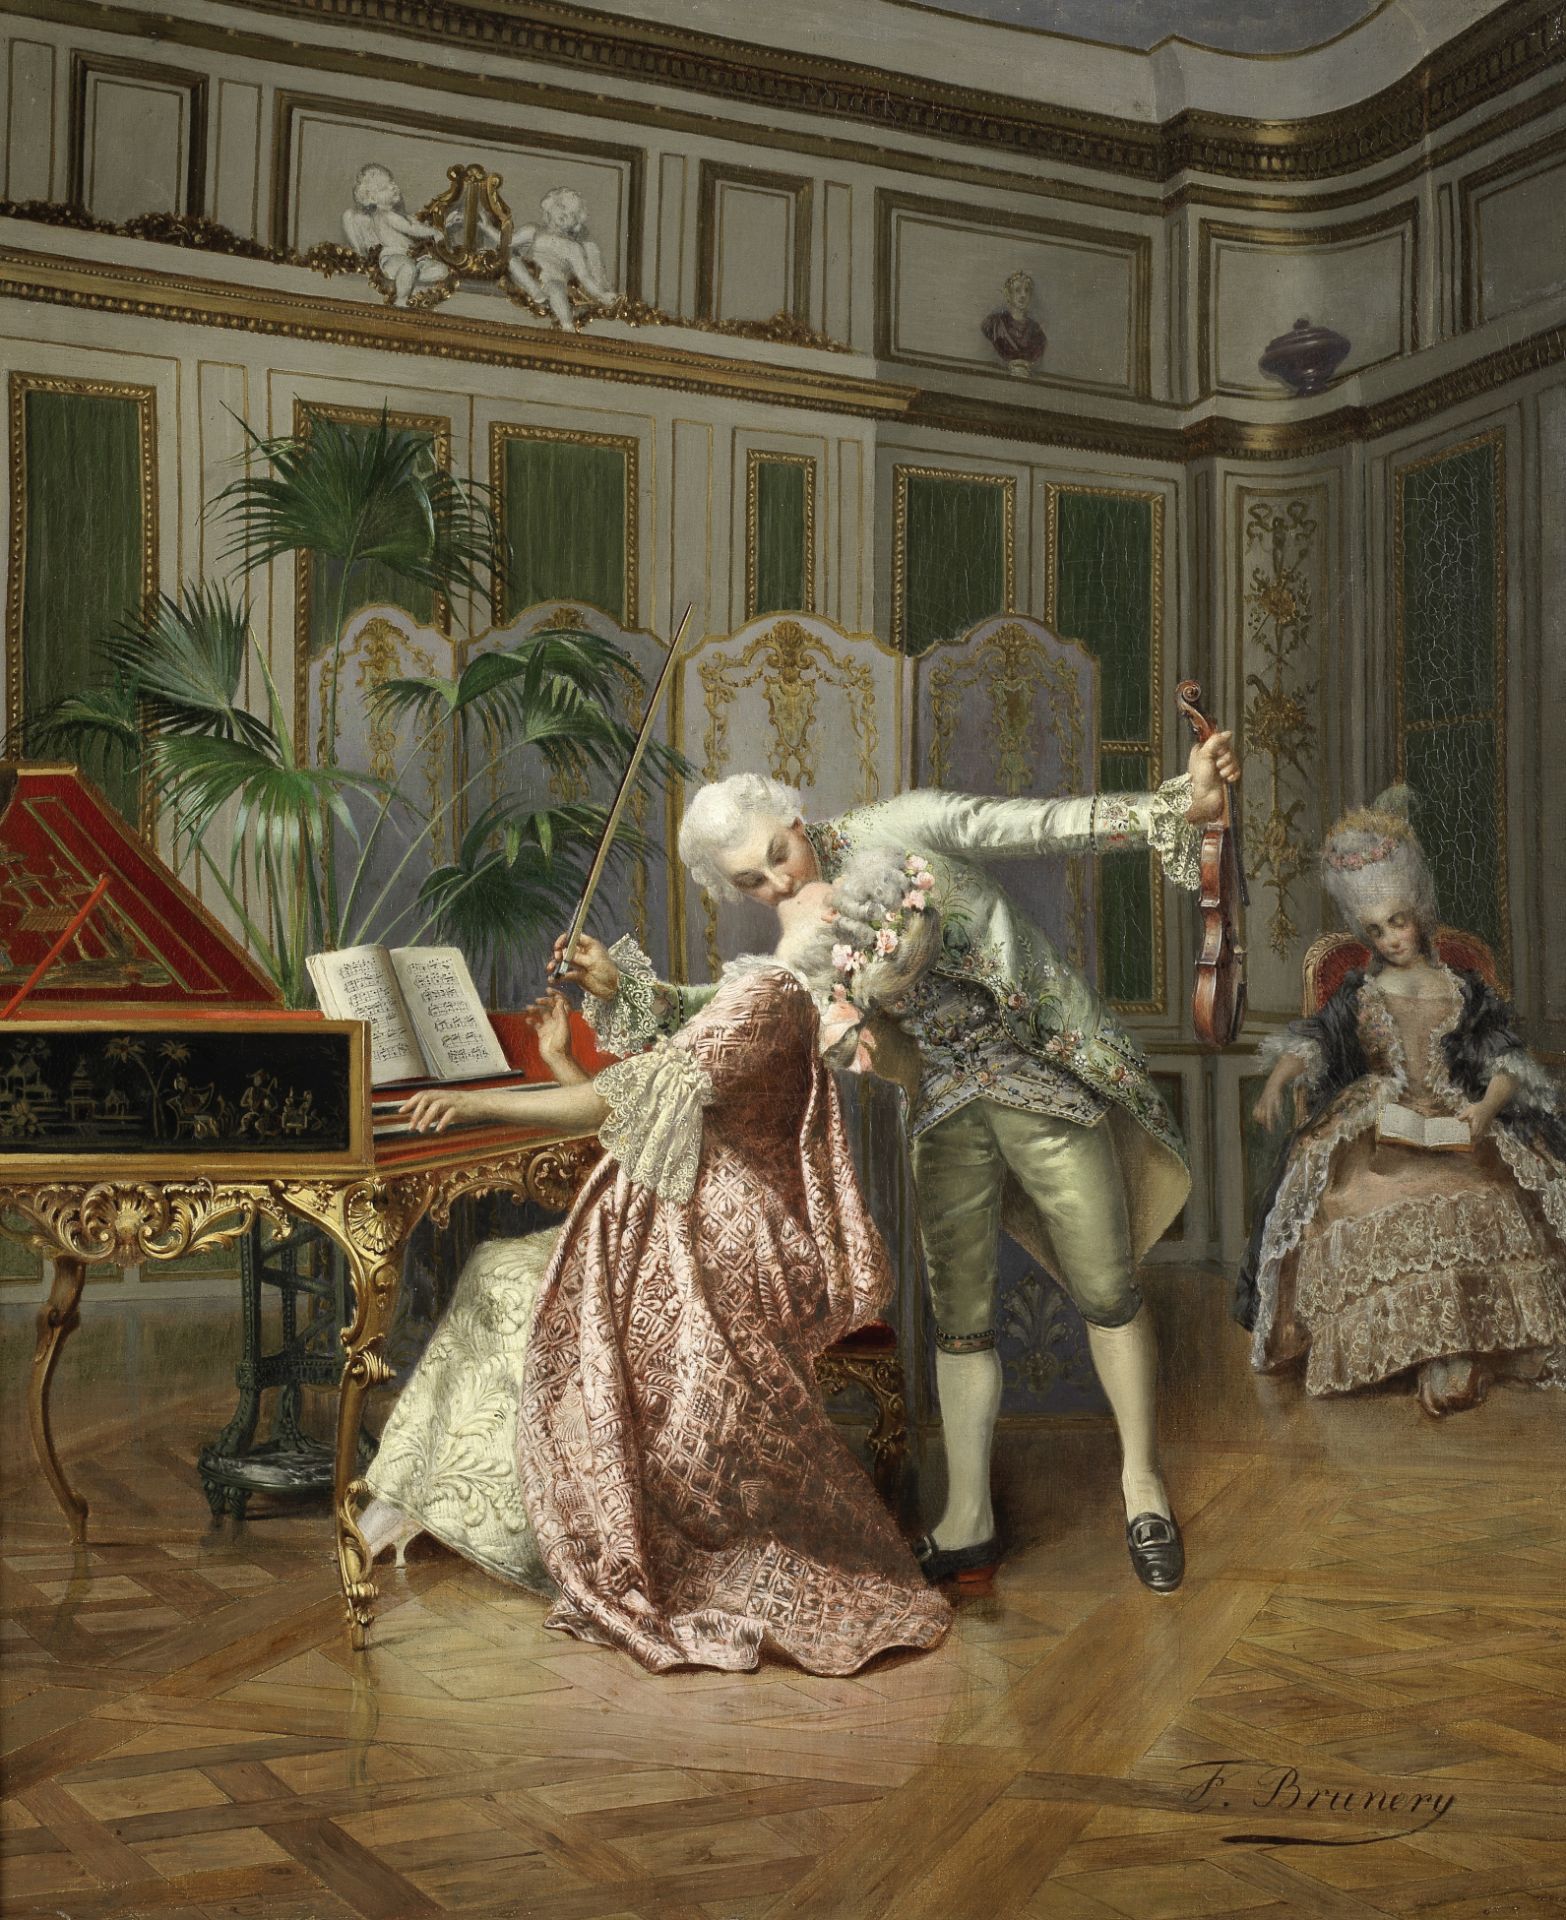 François Brunery (Italian, 1849-1926) The Stolen Kiss